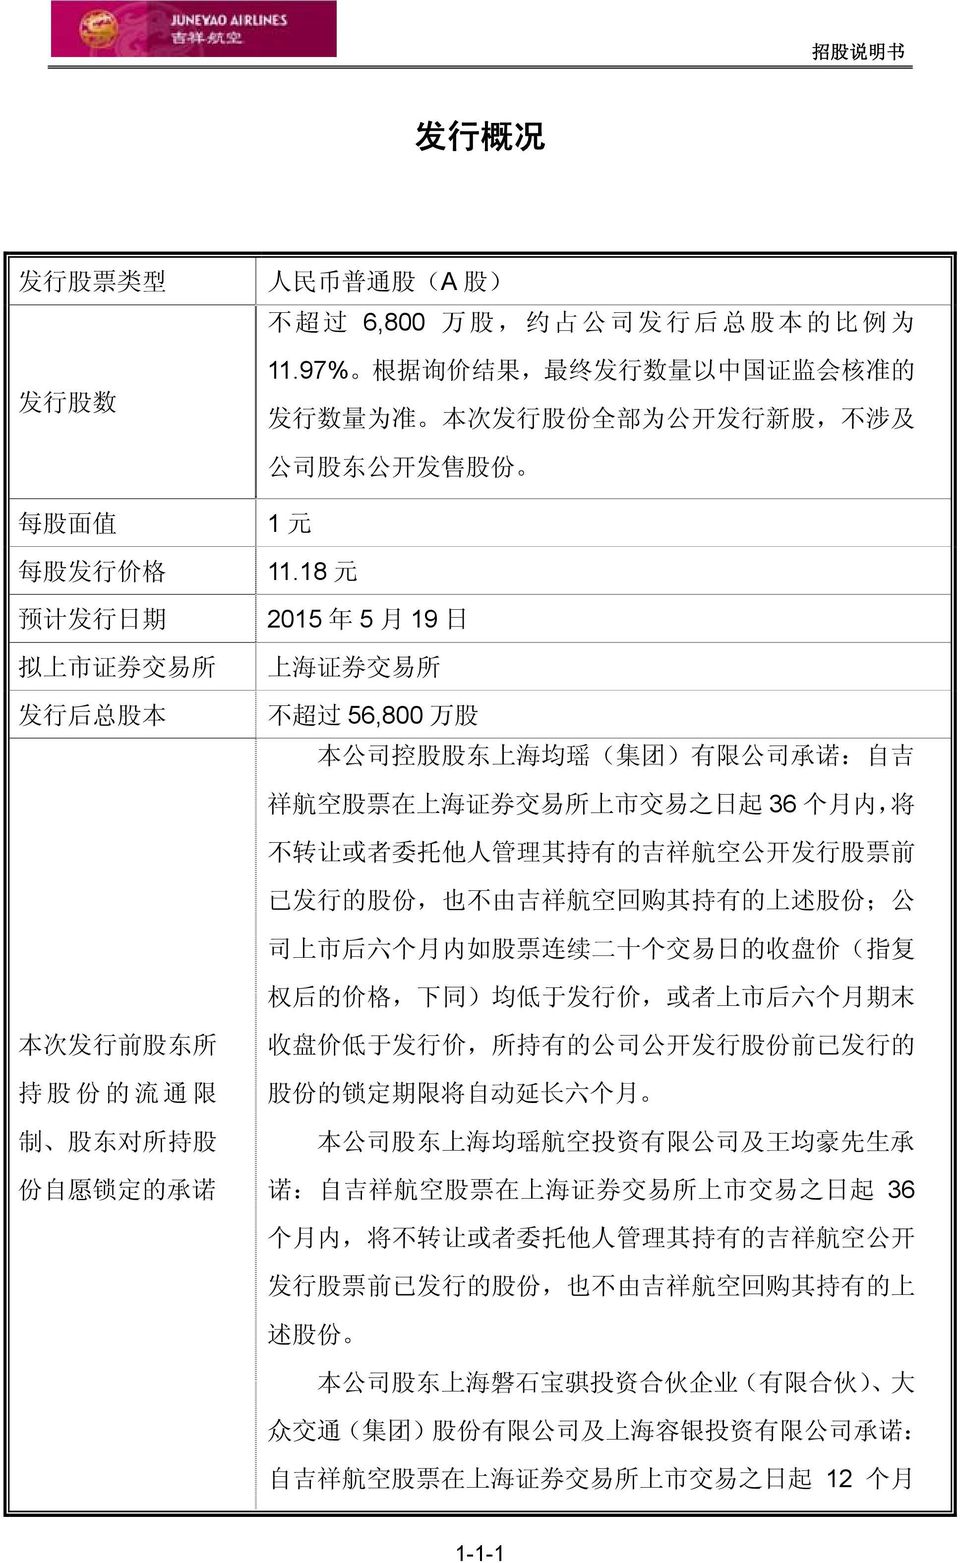 18 元 2015 年 5 月 19 日 上 海 证 券 交 易 所 不 超 过 56,800 万 股 本 公 司 控 股 股 东 上 海 均 瑶 ( 集 团 ) 有 限 公 司 承 诺 : 自 吉 祥 航 空 股 票 在 上 海 证 券 交 易 所 上 市 交 易 之 日 起 36 个 月 内, 将 不 转 让 或 者 委 托 他 人 管 理 其 持 有 的 吉 祥 航 空 公 开 发 行 股